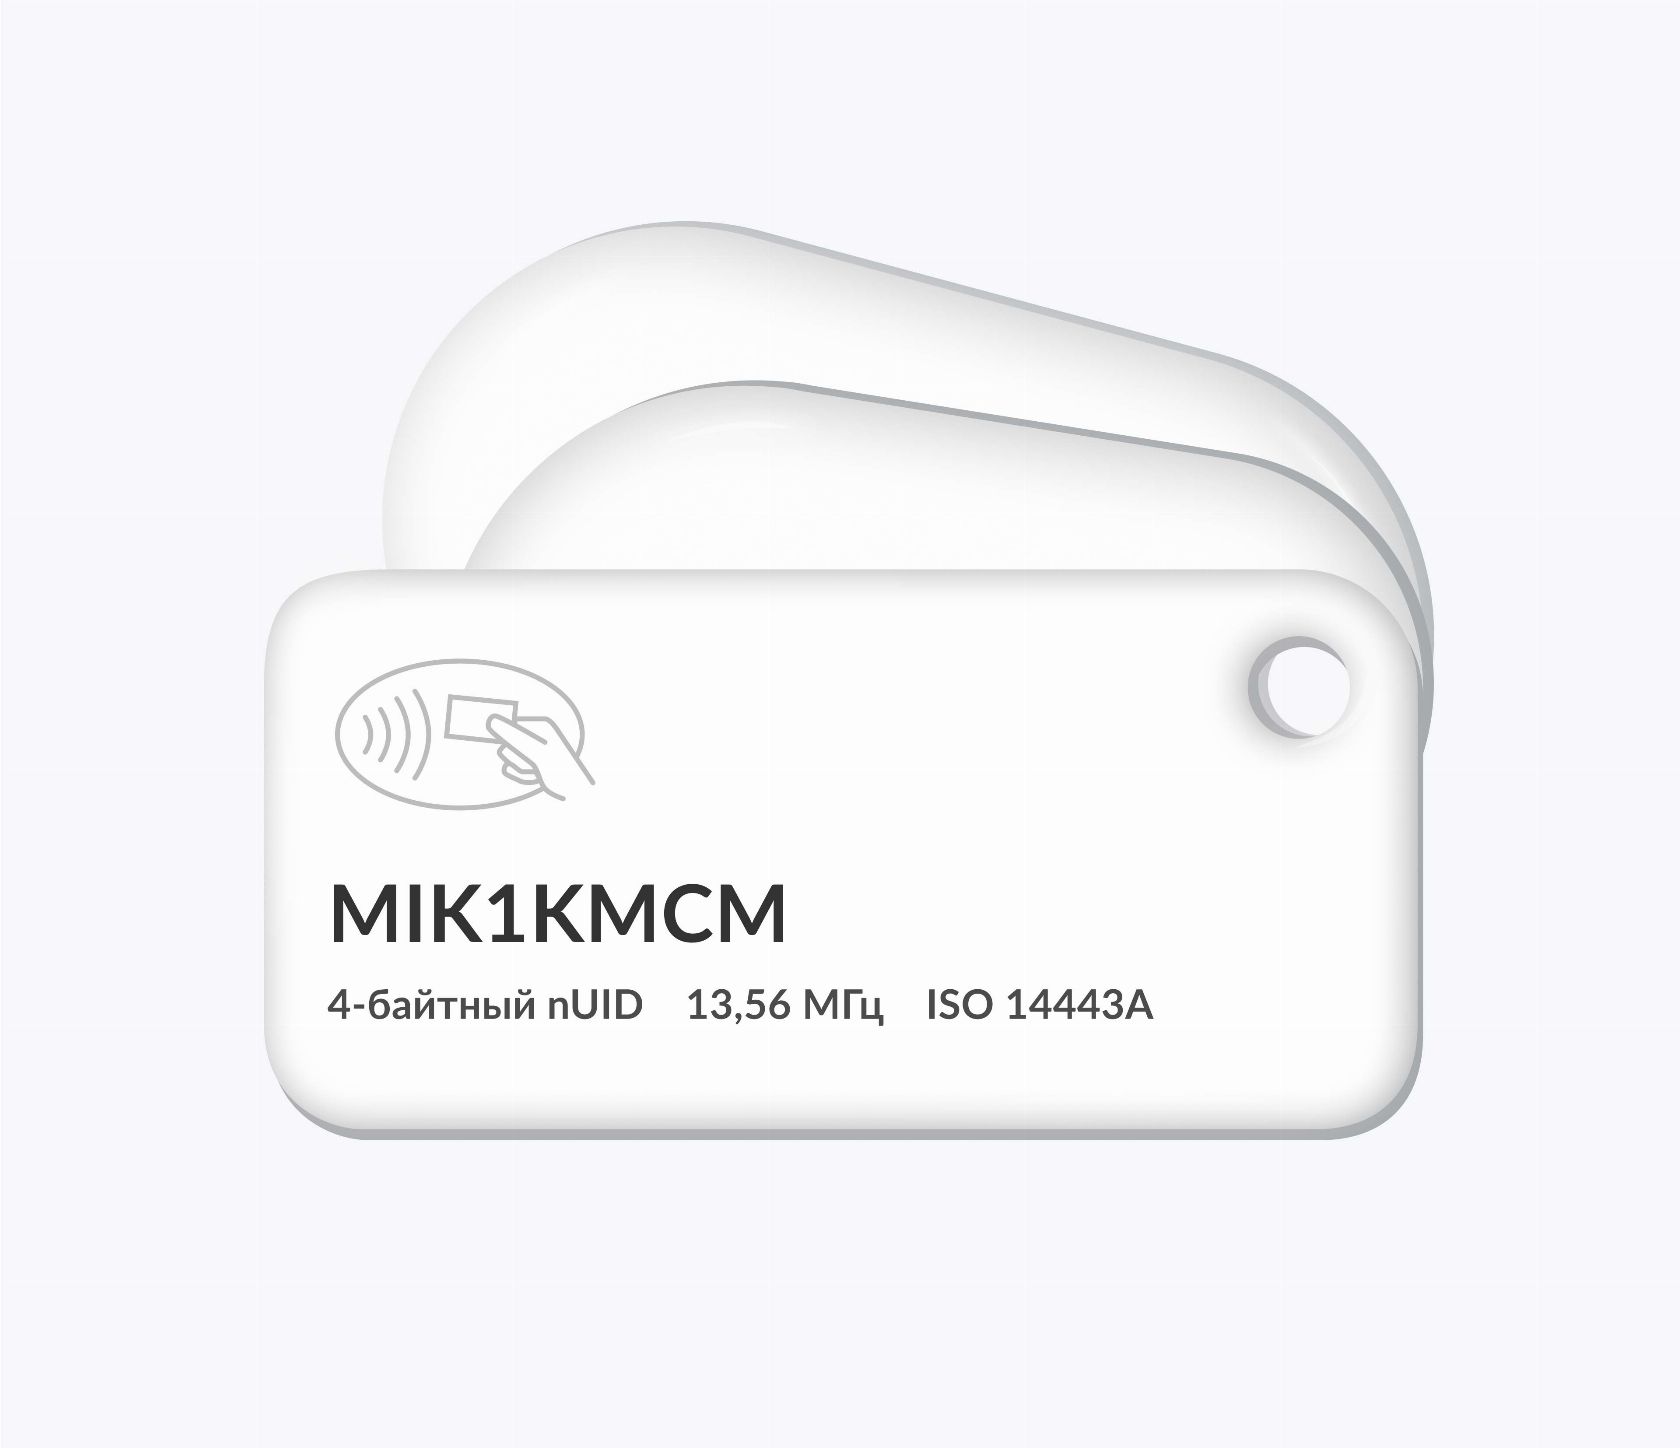 RFID-брелоки NEOKEY® с чипом MIK1KMCM 4 byte nUID и вашим логотипом